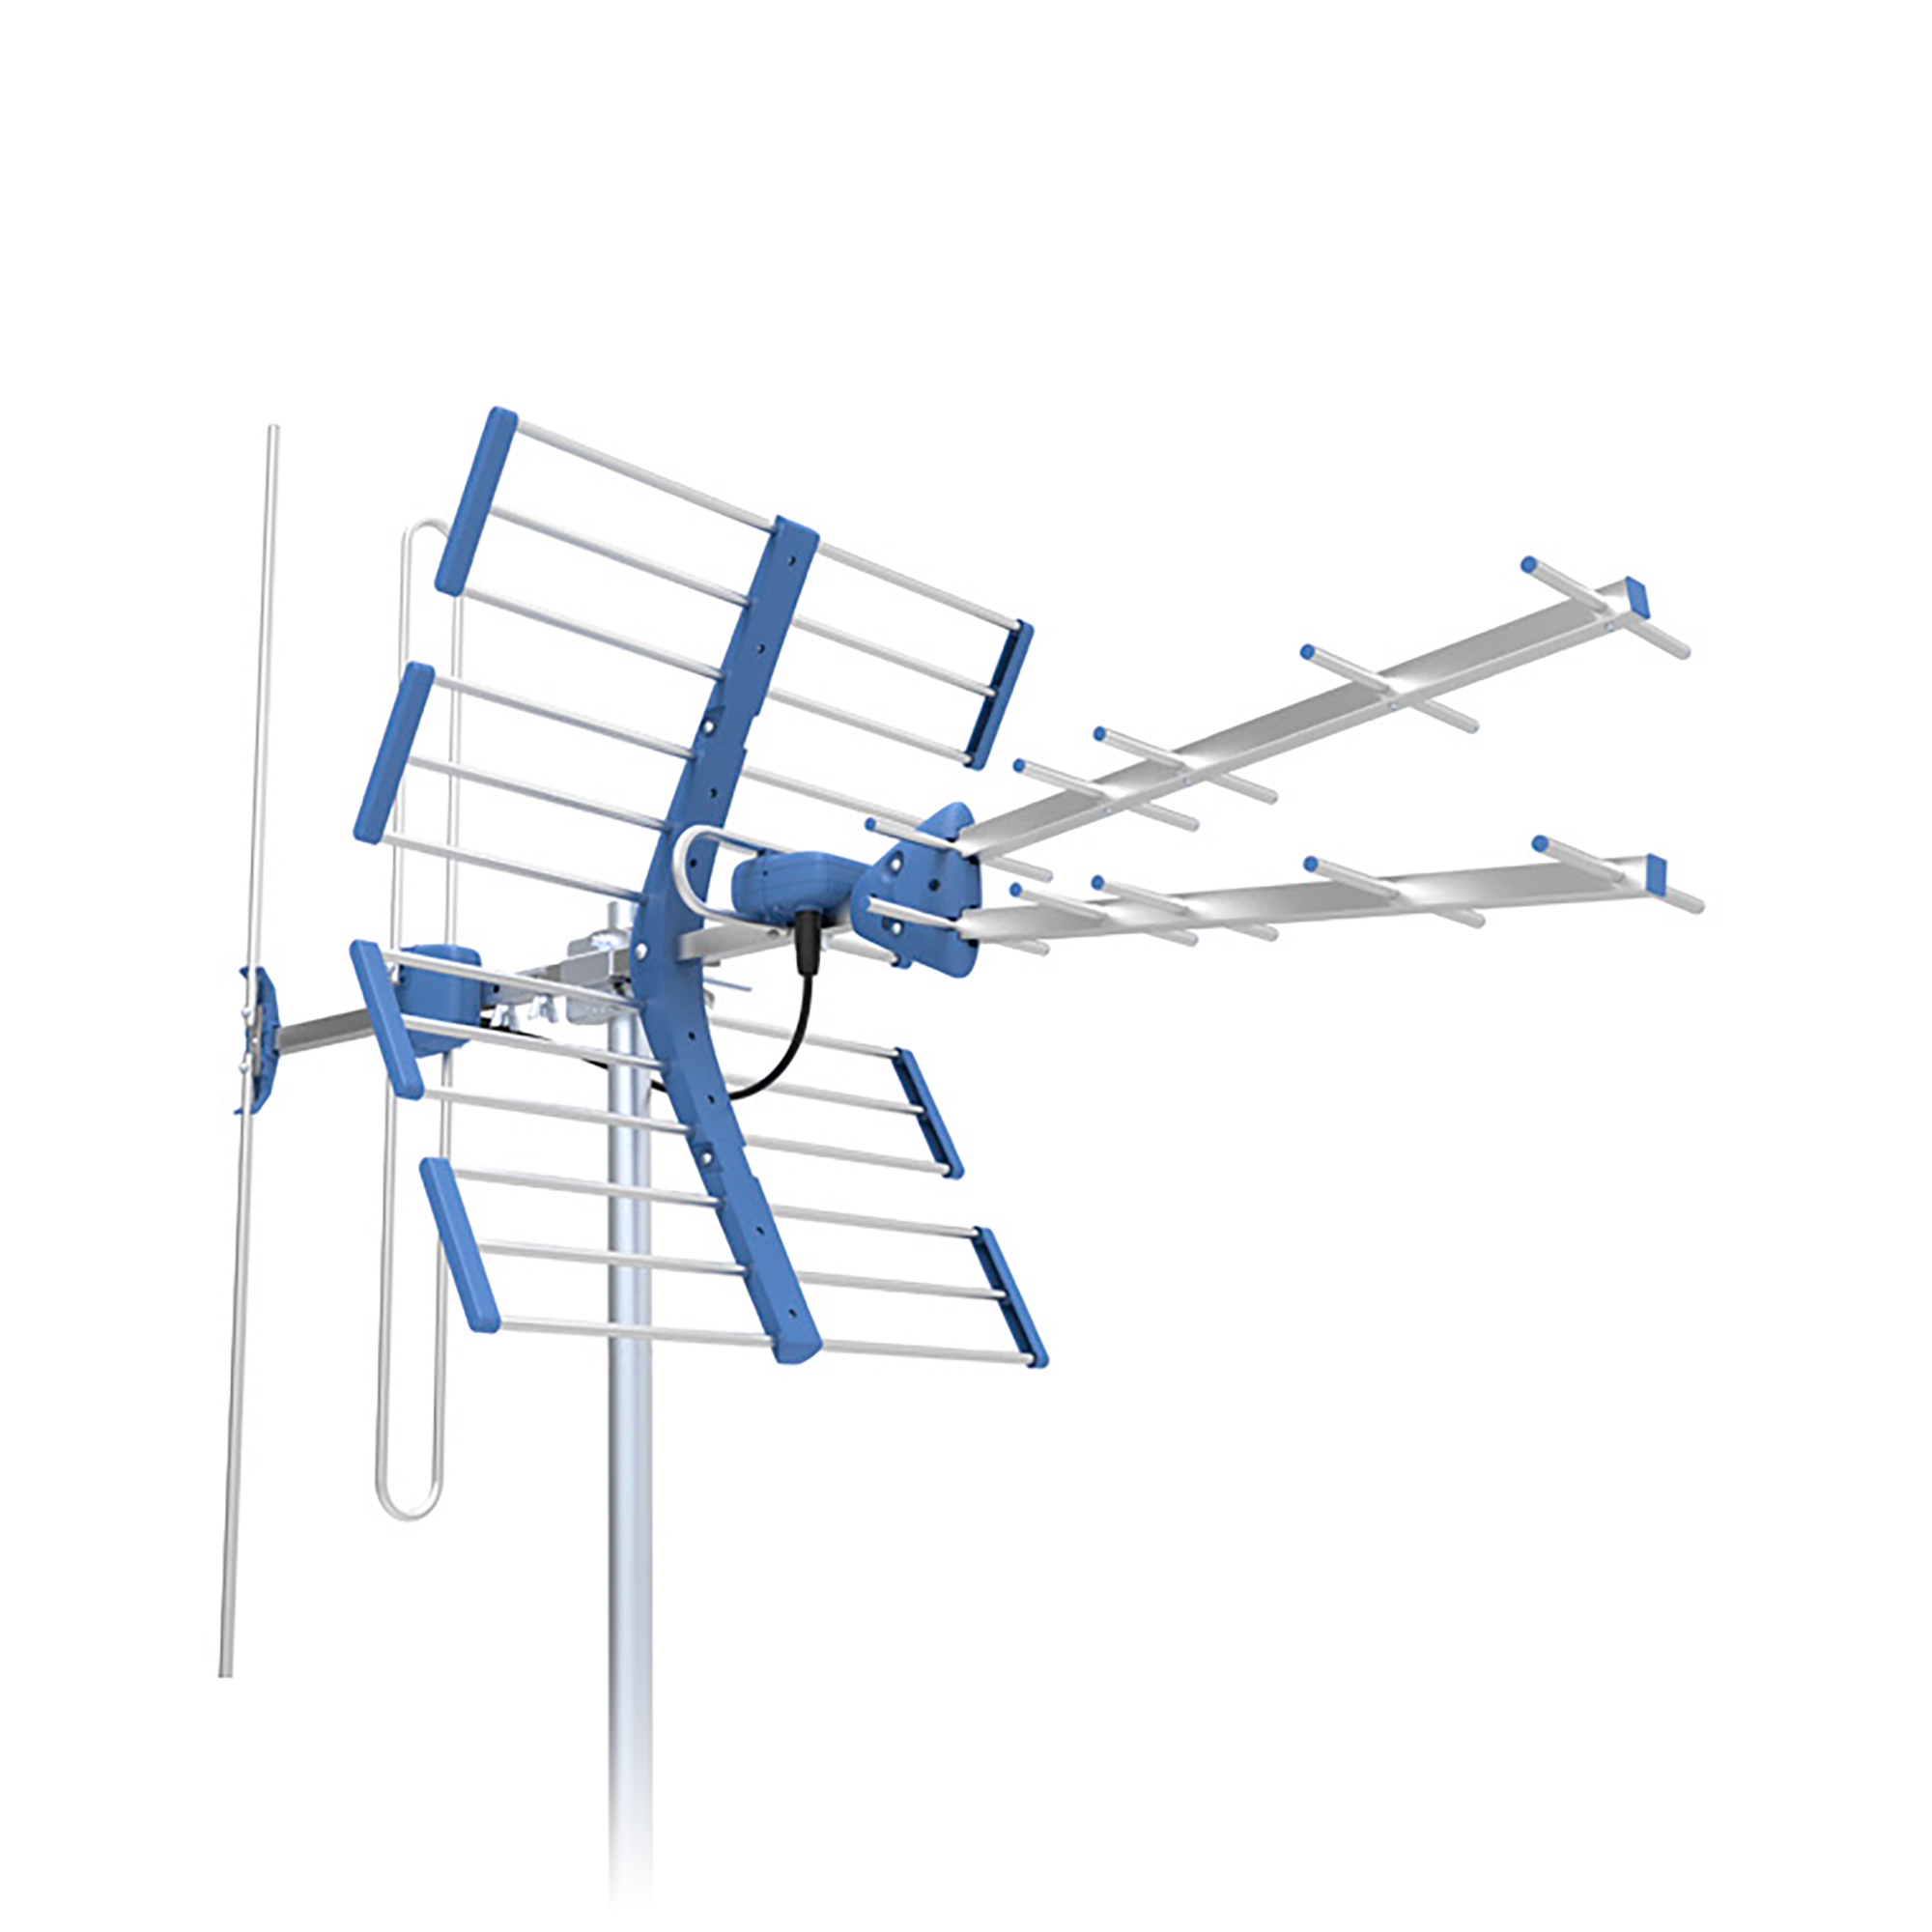 LEC-ANT0712------------Cechy----------Antena combo - pasmo VHF + UHFTechnologia 5G ProtectedRegulowana polaryzacja pasma VHFSzybki montaż, bez narzędziGotowa do odbioru pasma DVB-T/T2 i DAB+Konstrukcja odporna na warunki atmosferyczneDipol ze zwrotnicą VHF/UHF---